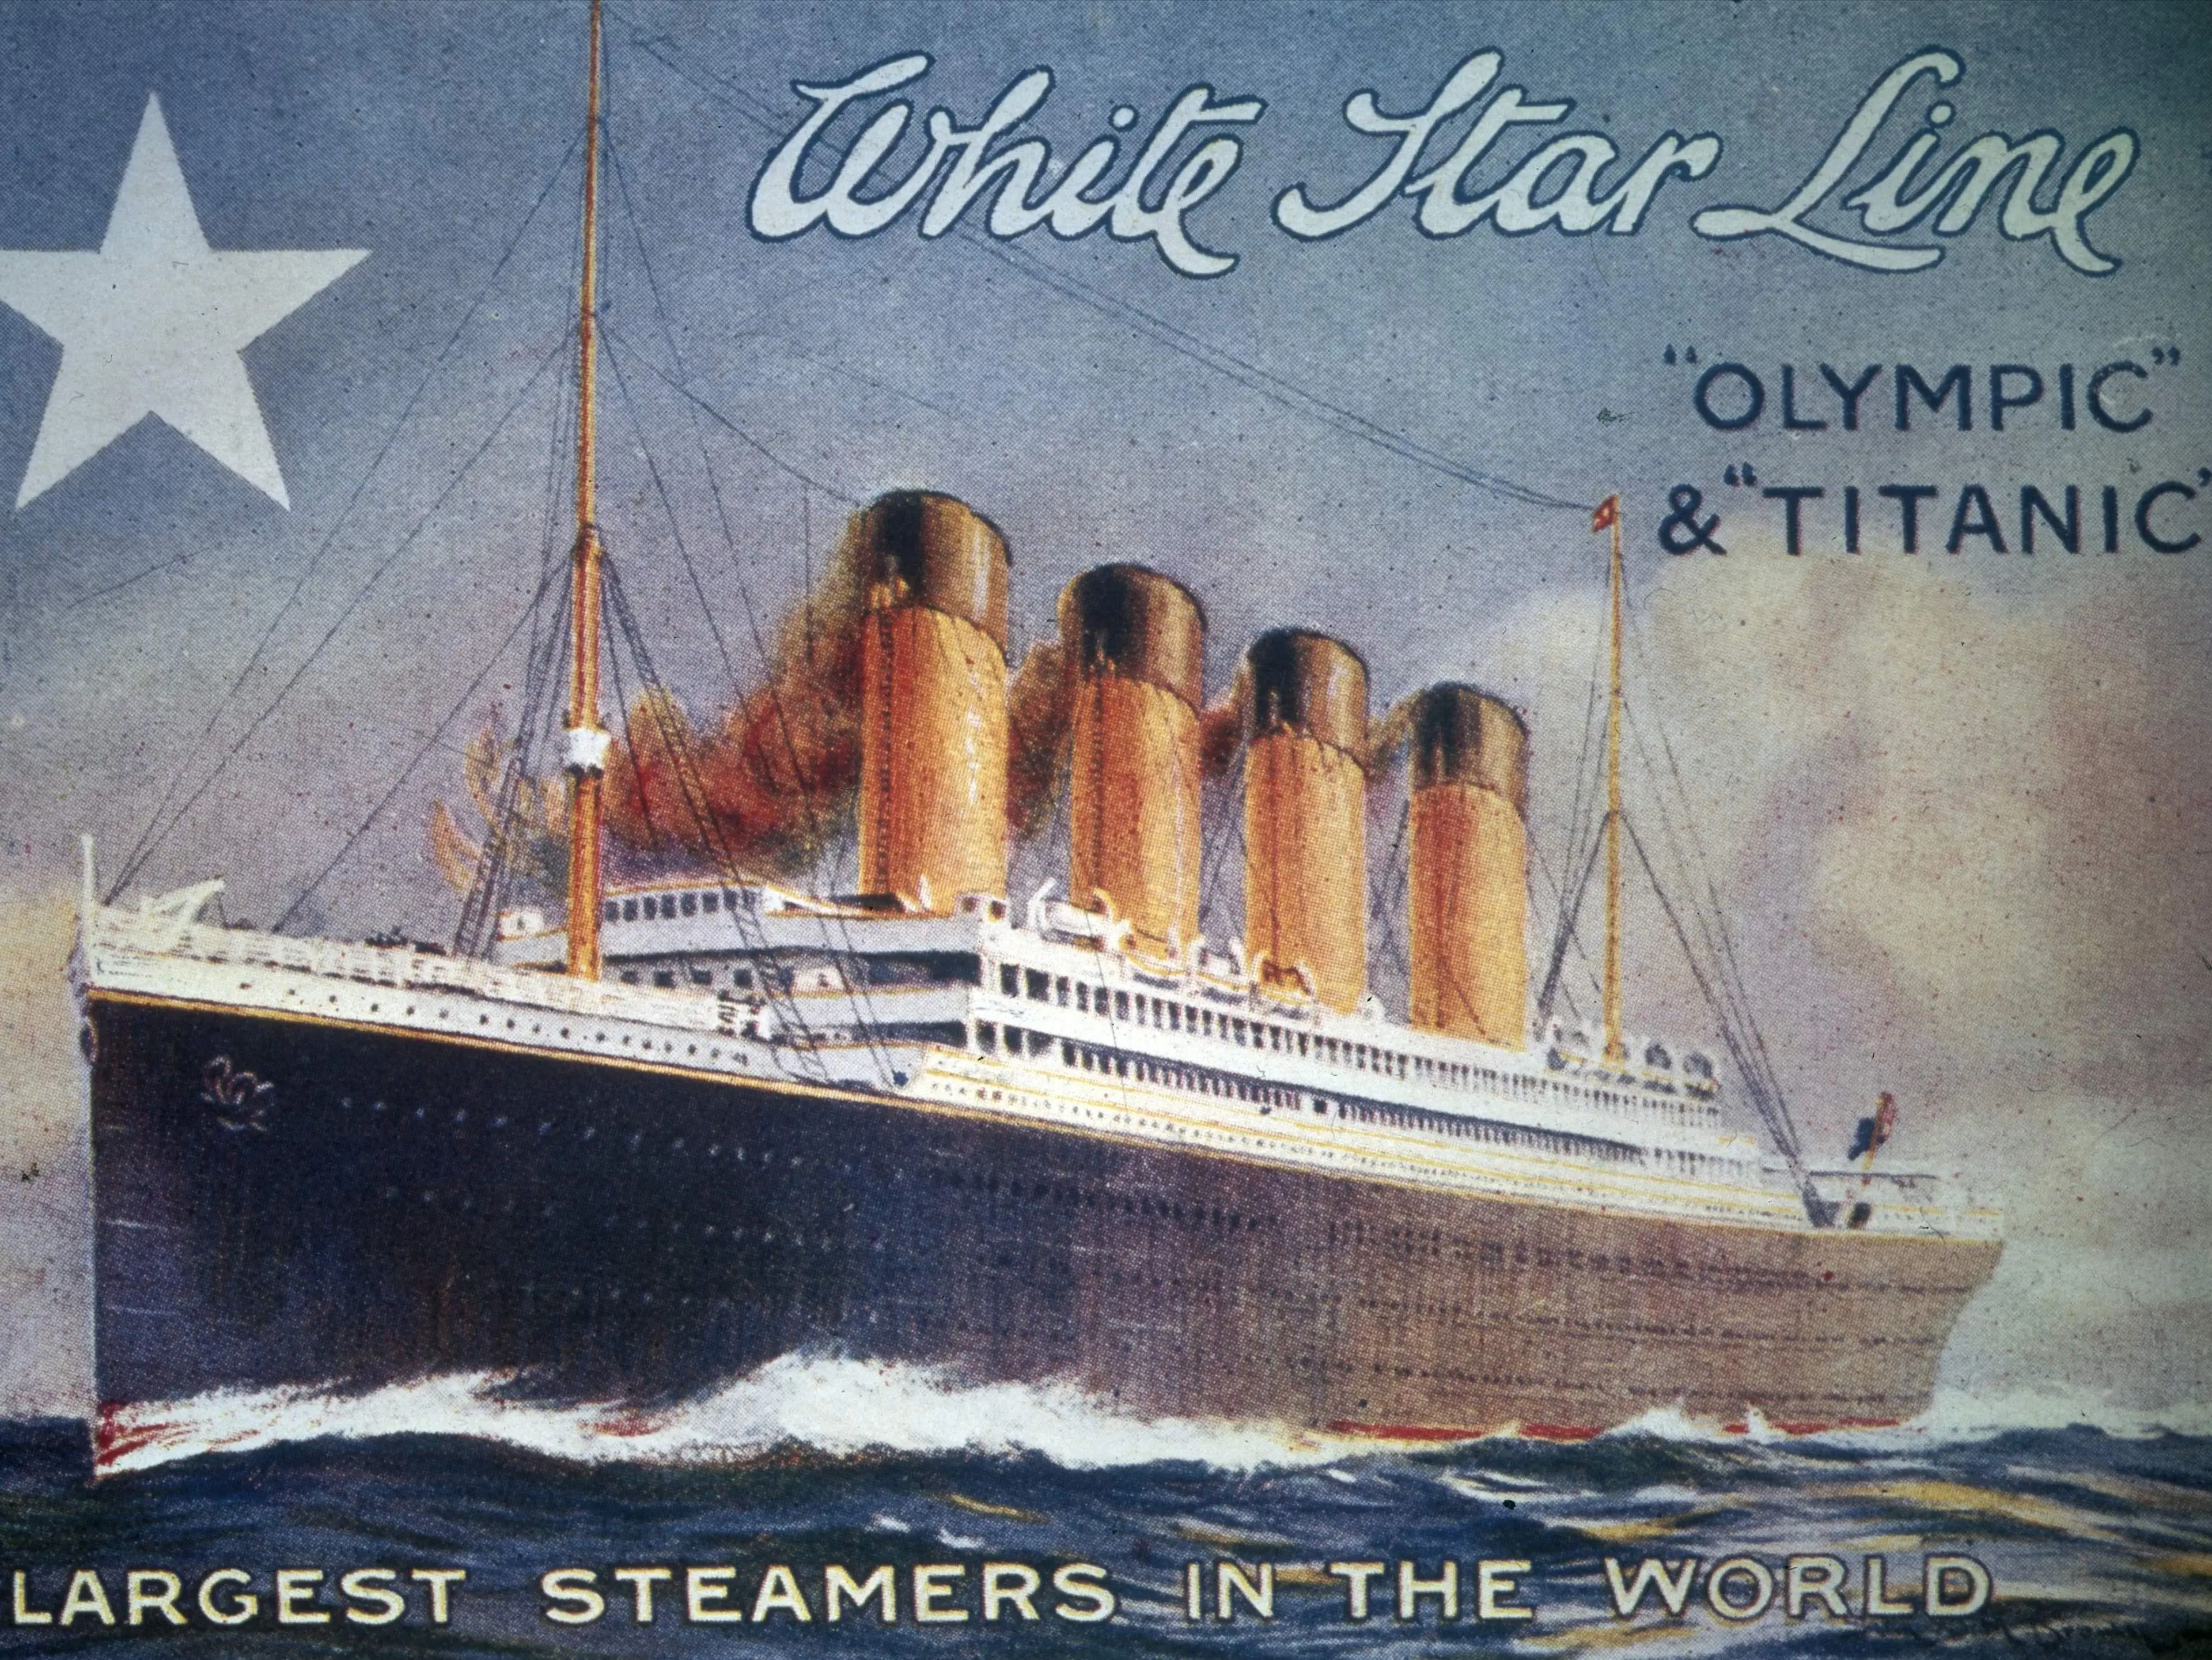 Folleto de la White Star Line británica sobre los transatlánticos Olympic y Titanic, hacia 1910.